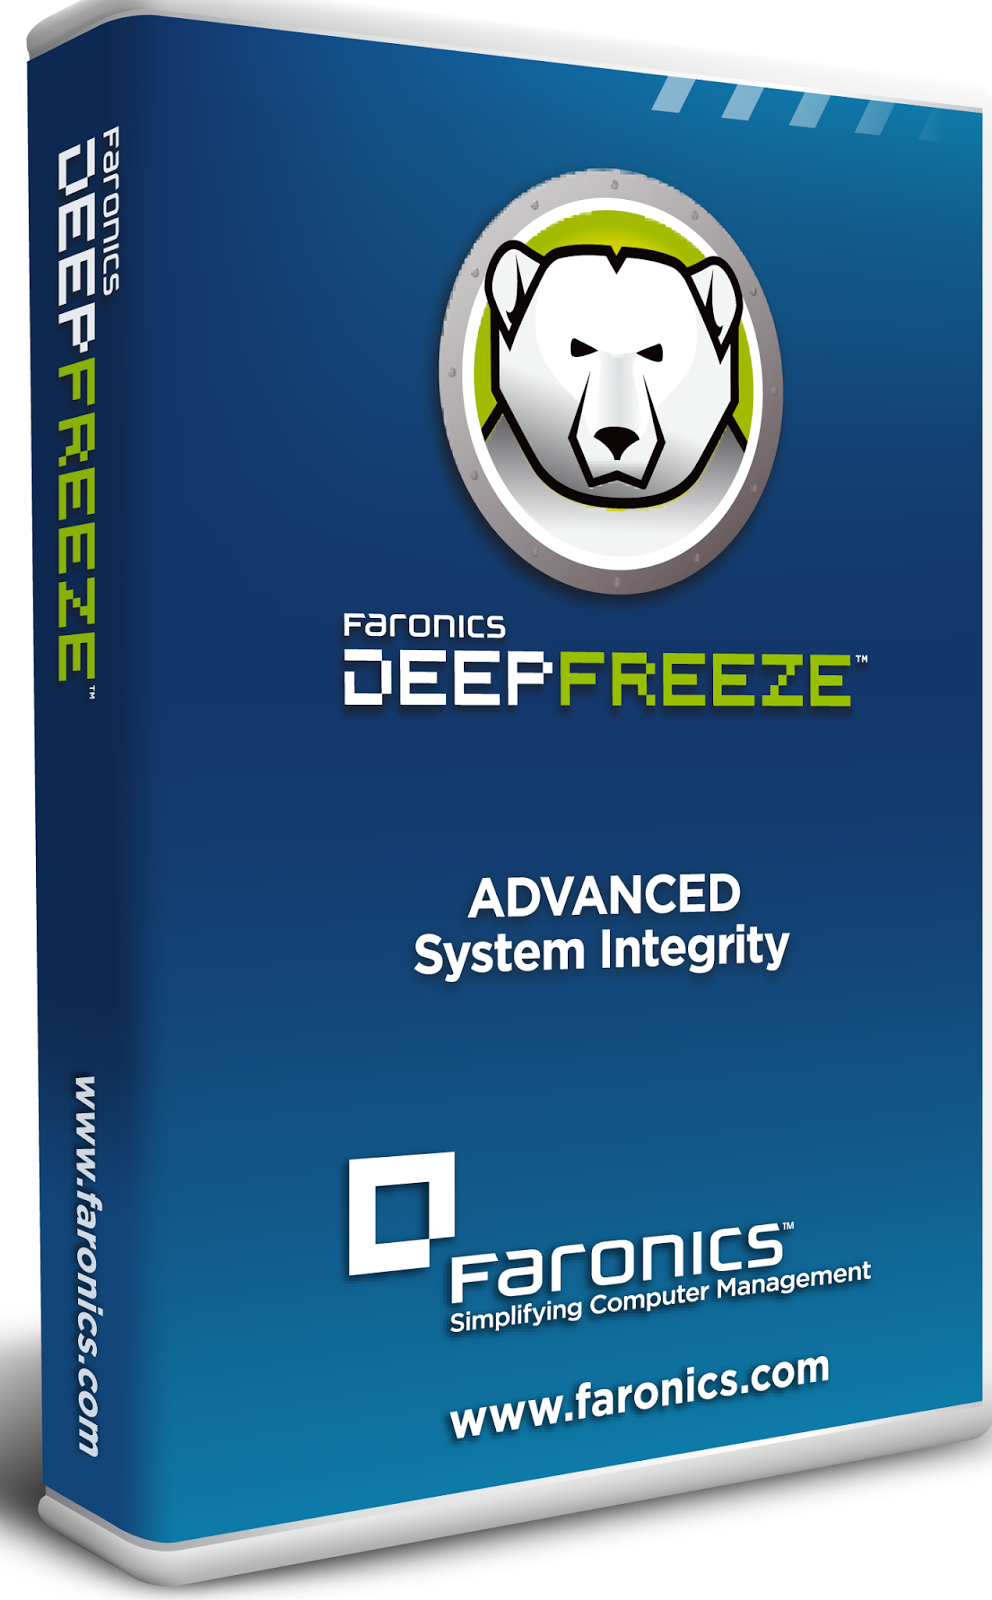 Deep freeze 6 download